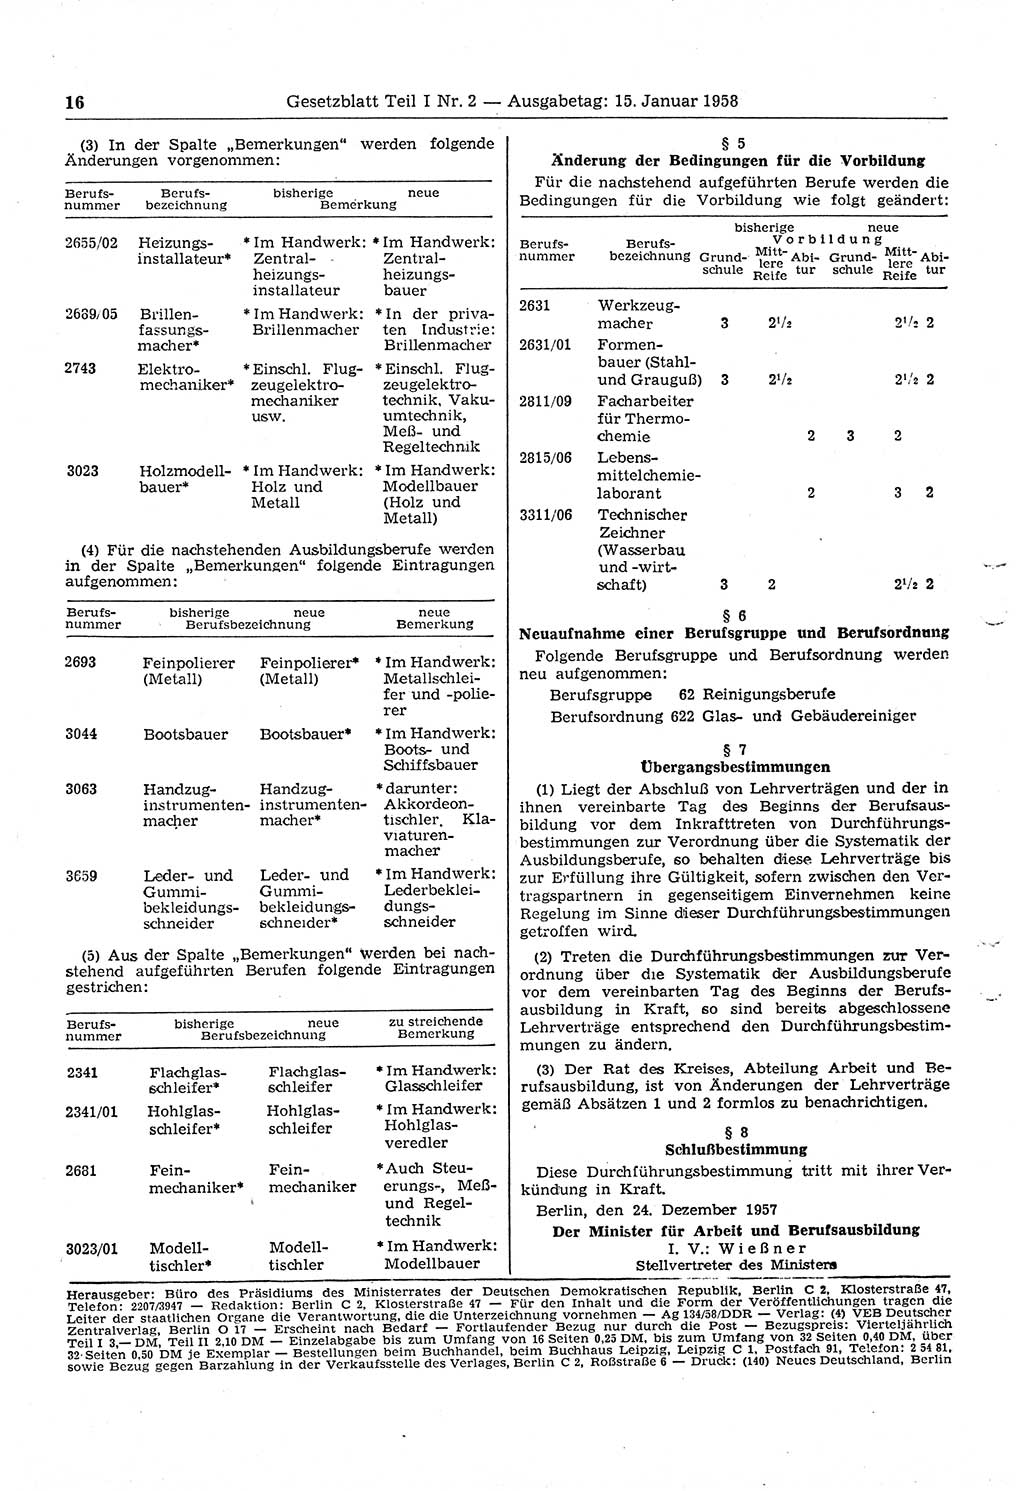 Gesetzblatt (GBl.) der Deutschen Demokratischen Republik (DDR) Teil Ⅰ 1958, Seite 16 (GBl. DDR Ⅰ 1958, S. 16)